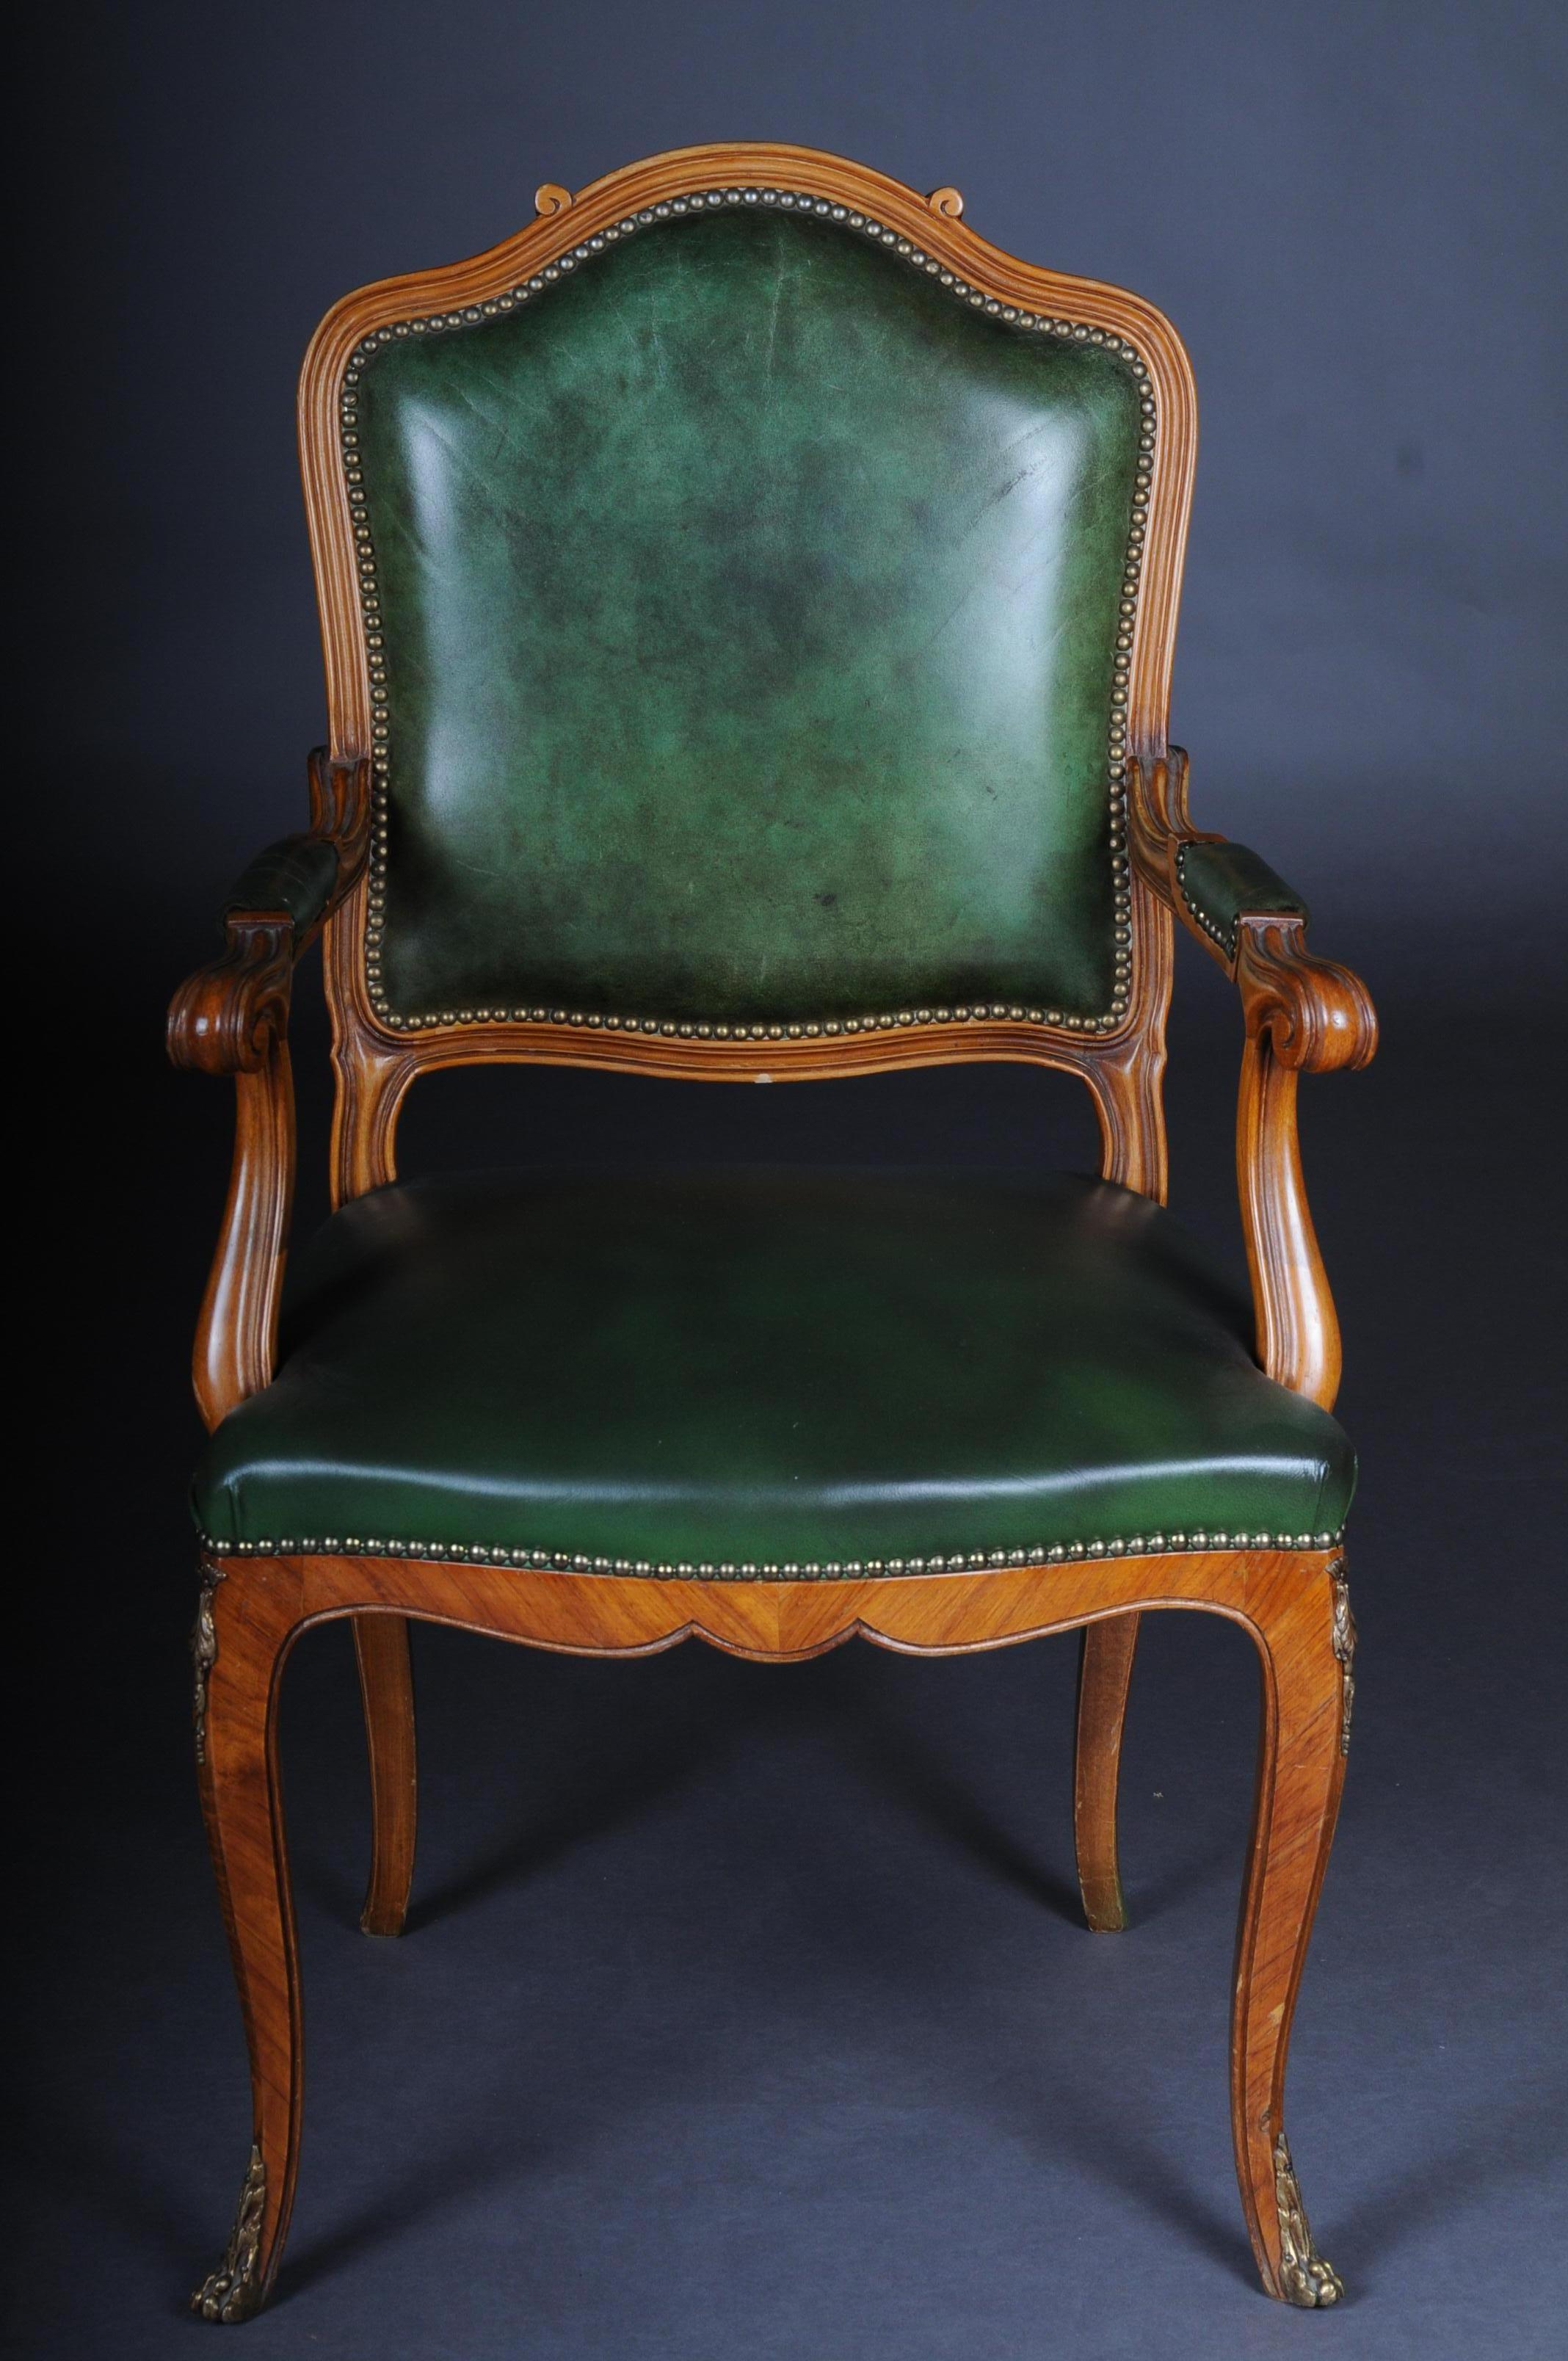 Schöner Sessel im Rokoko / Louis XV Stil

Massivholz Grünes Leder. Rückenlehne in Form eines Schildes. Armlehnenabschluss mit gebogenen Griffen. Sitz und Rückenlehne sind mit einer historischen, klassischen Polsterung versehen.

(B - 155)
Maße: SH